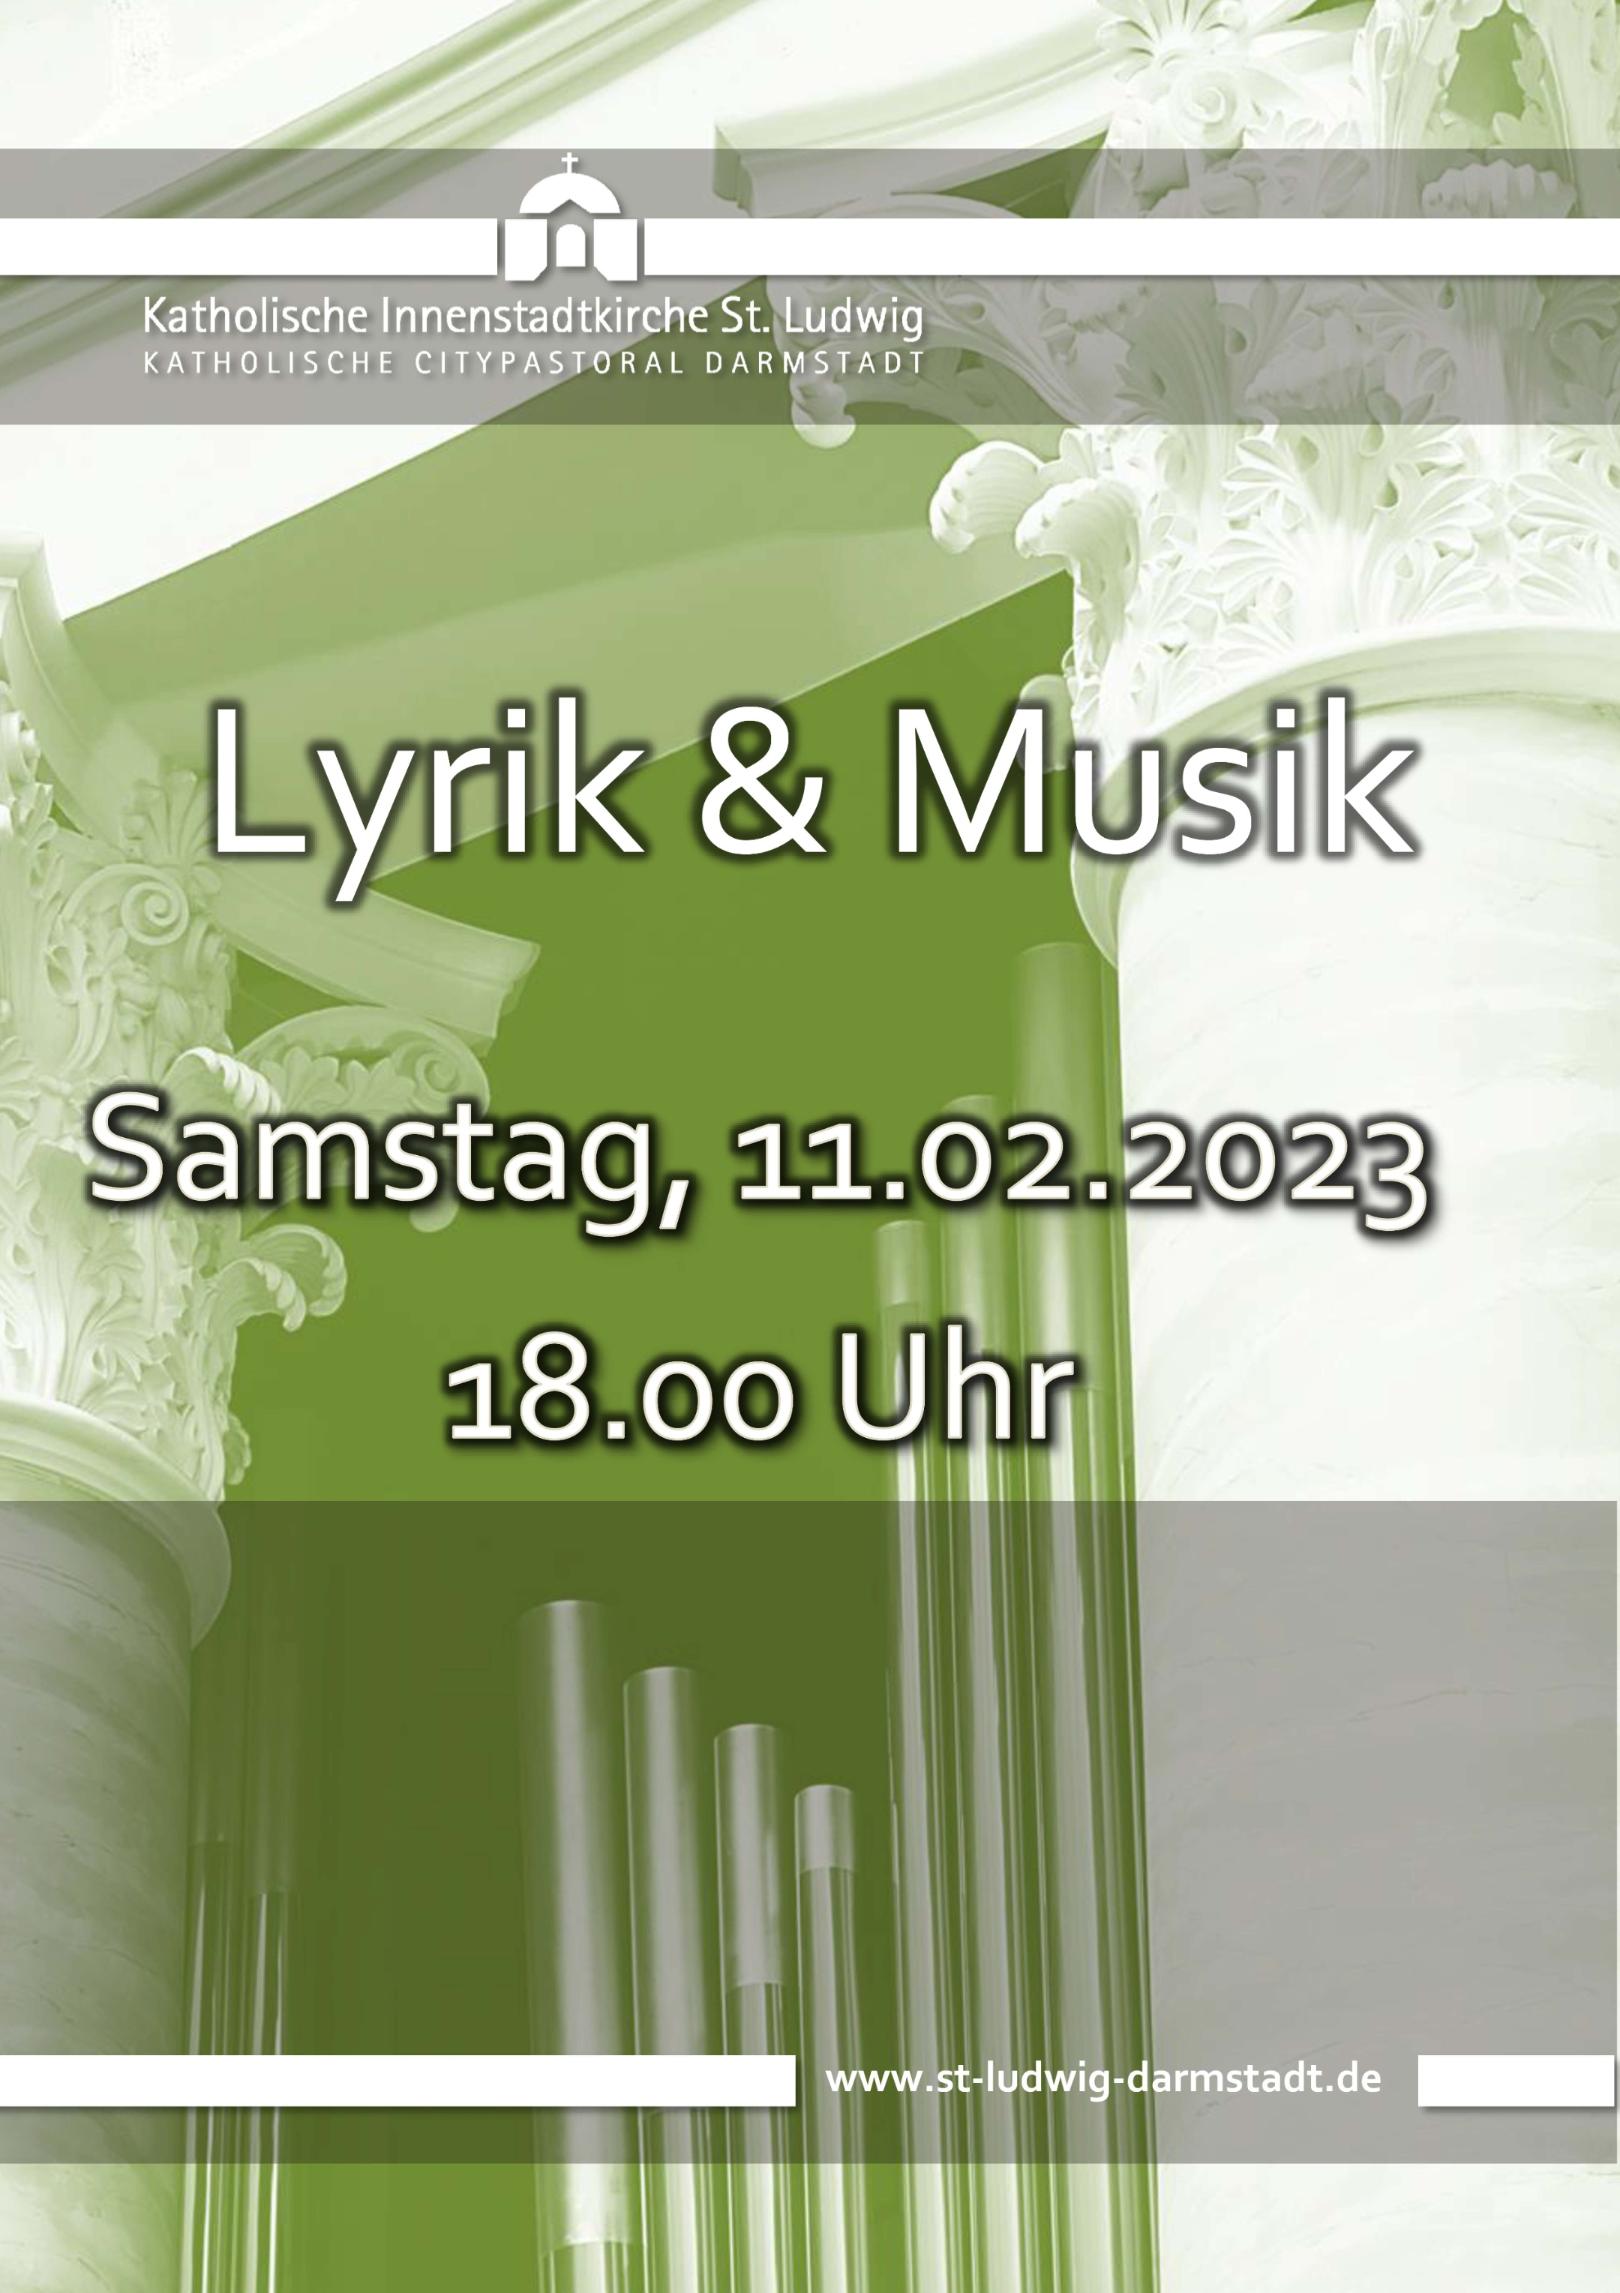 plakat Lyrik und Musik 23-2-11 (c) St.Ludwig Darmstadt